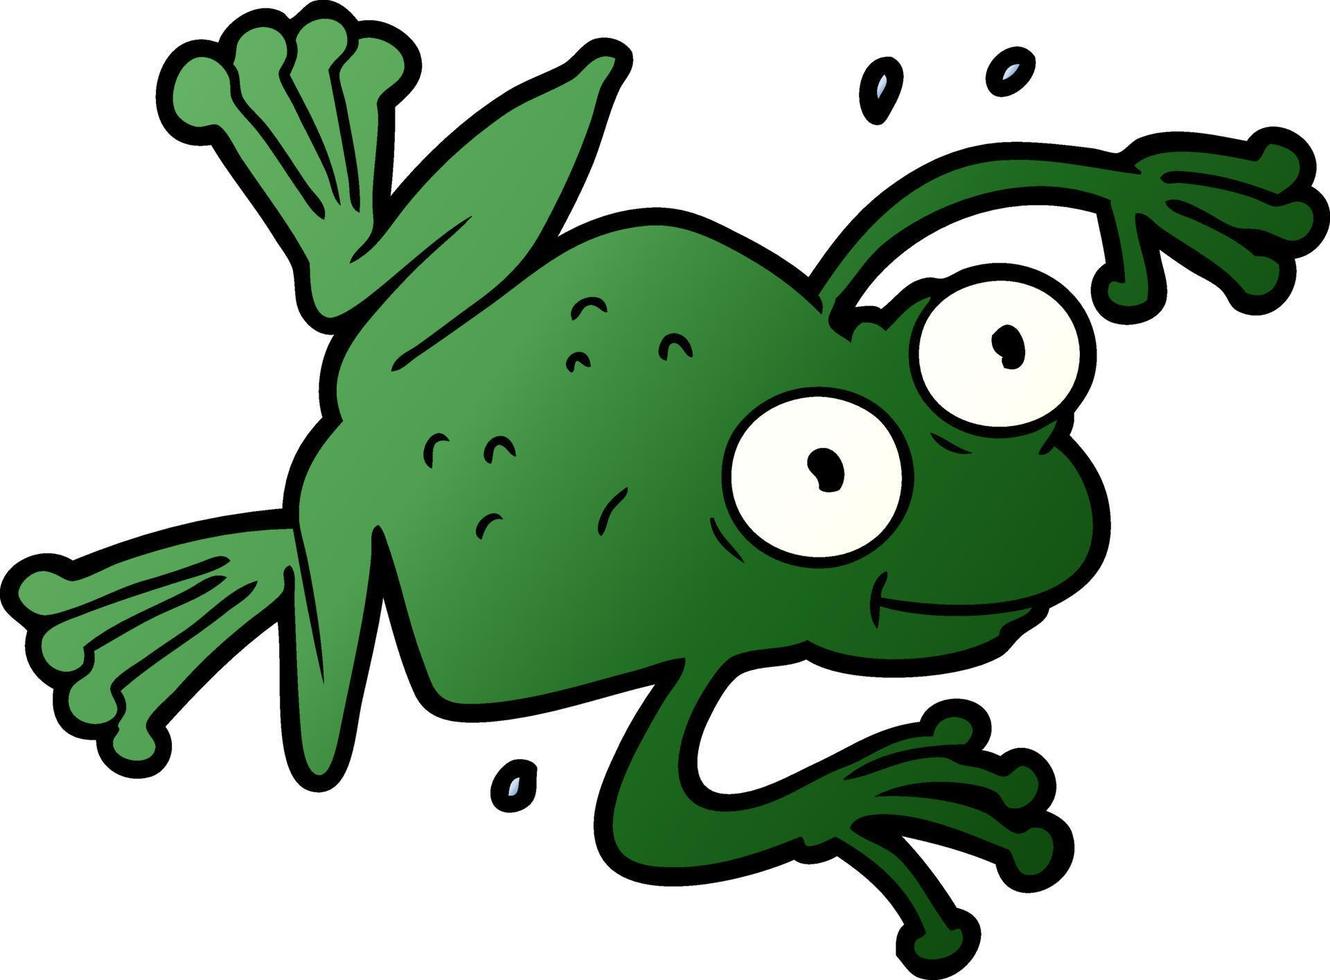 rana verde de dibujos animados vector